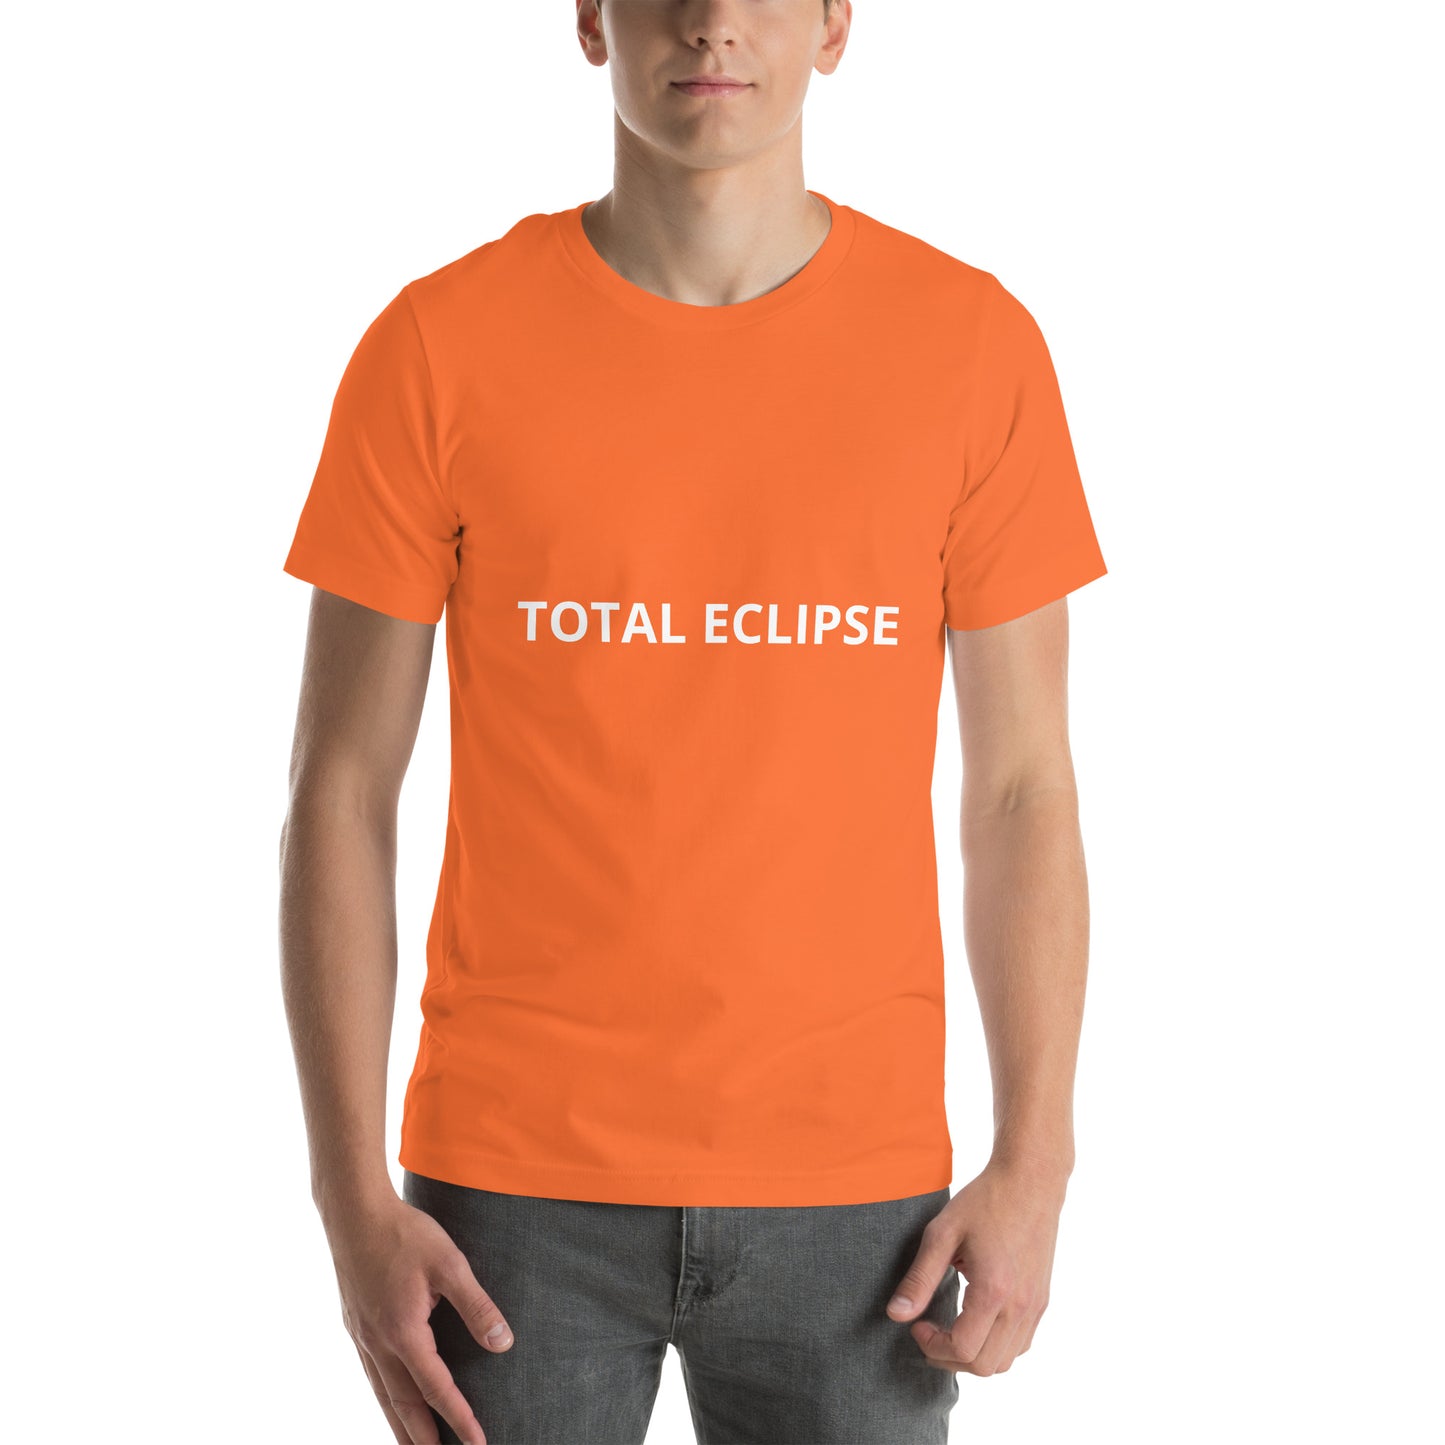 TOTAL ECLIPSE Unisex t-shirt